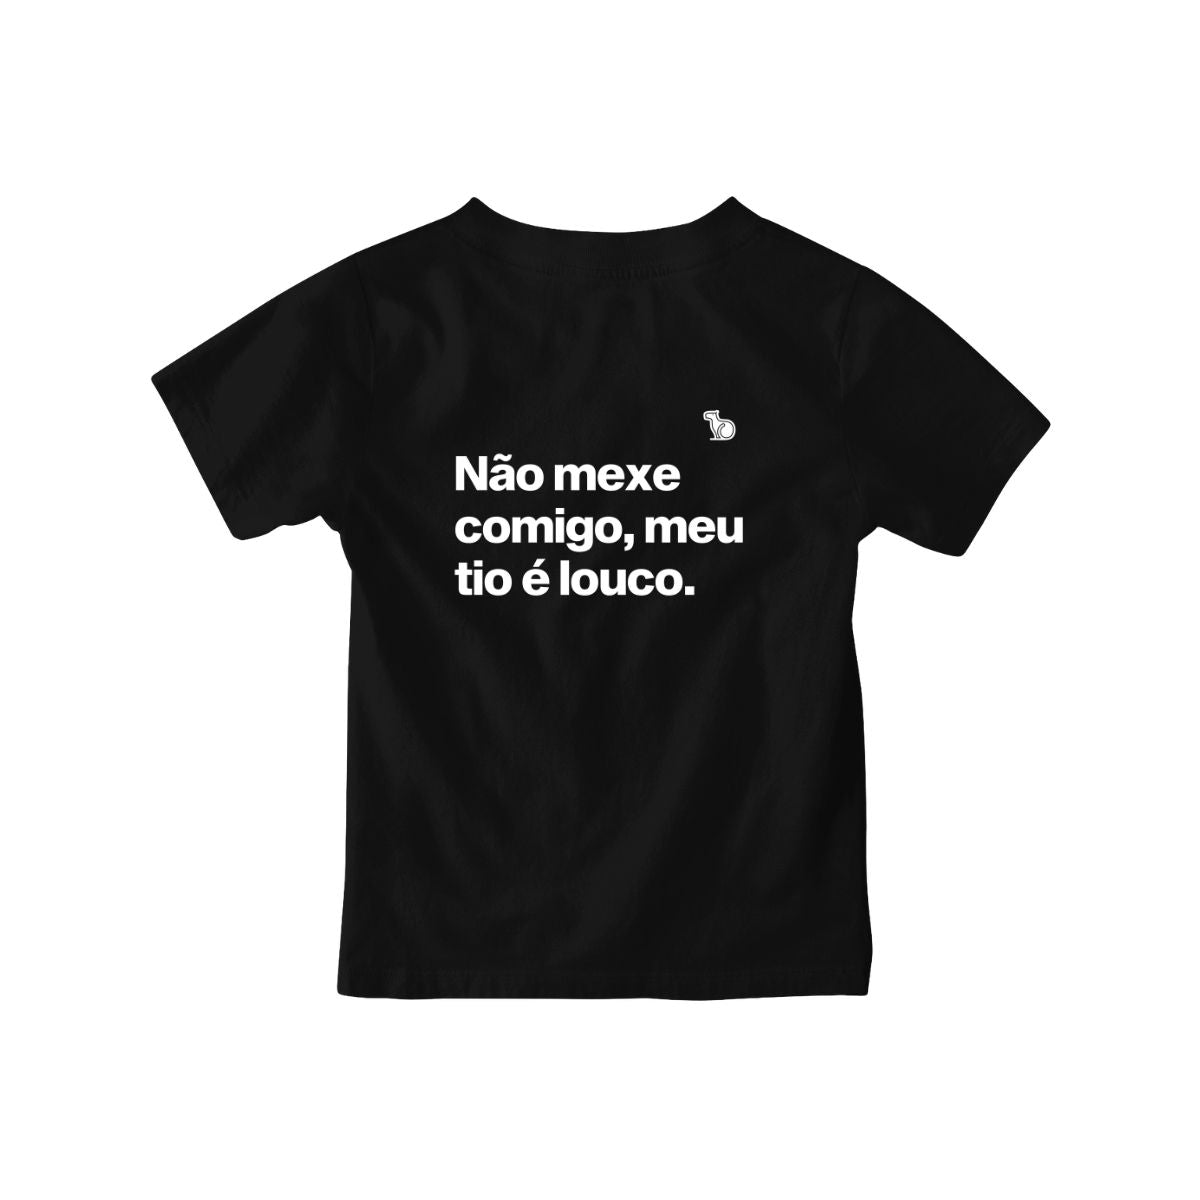 Camiseta infantil preta com a frase "Não mexe comigo, meu tio é louco."